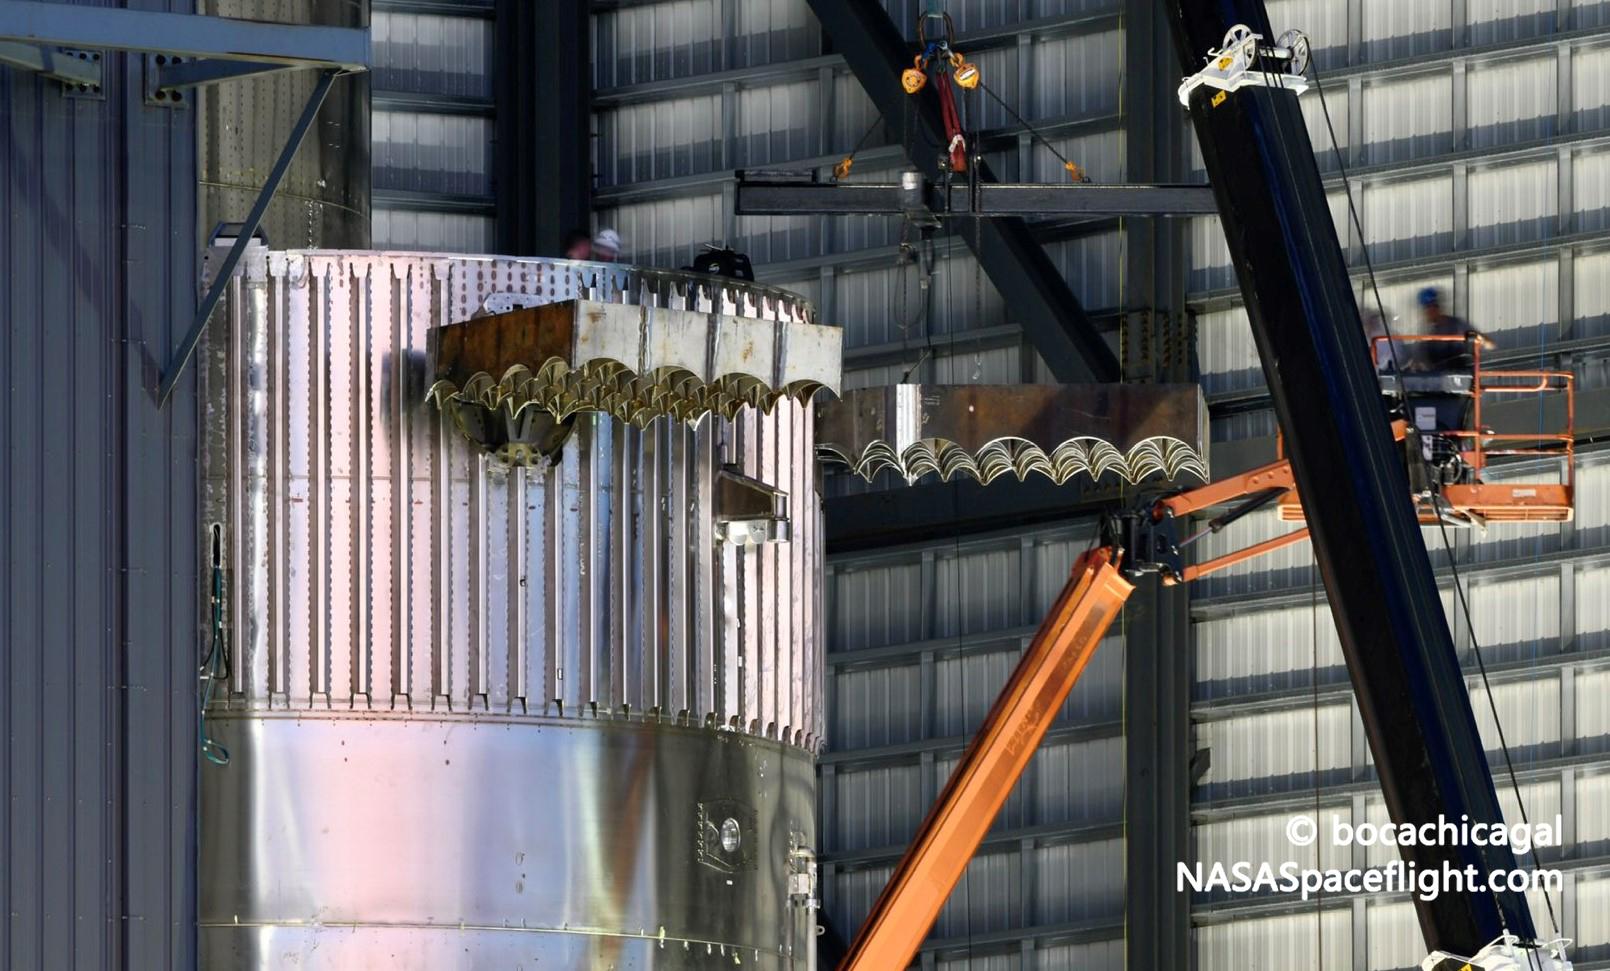 SpaceX оснастила первый ракетный ускоритель Starship орбитального класса решетчатыми плавниками и двигателями Raptor